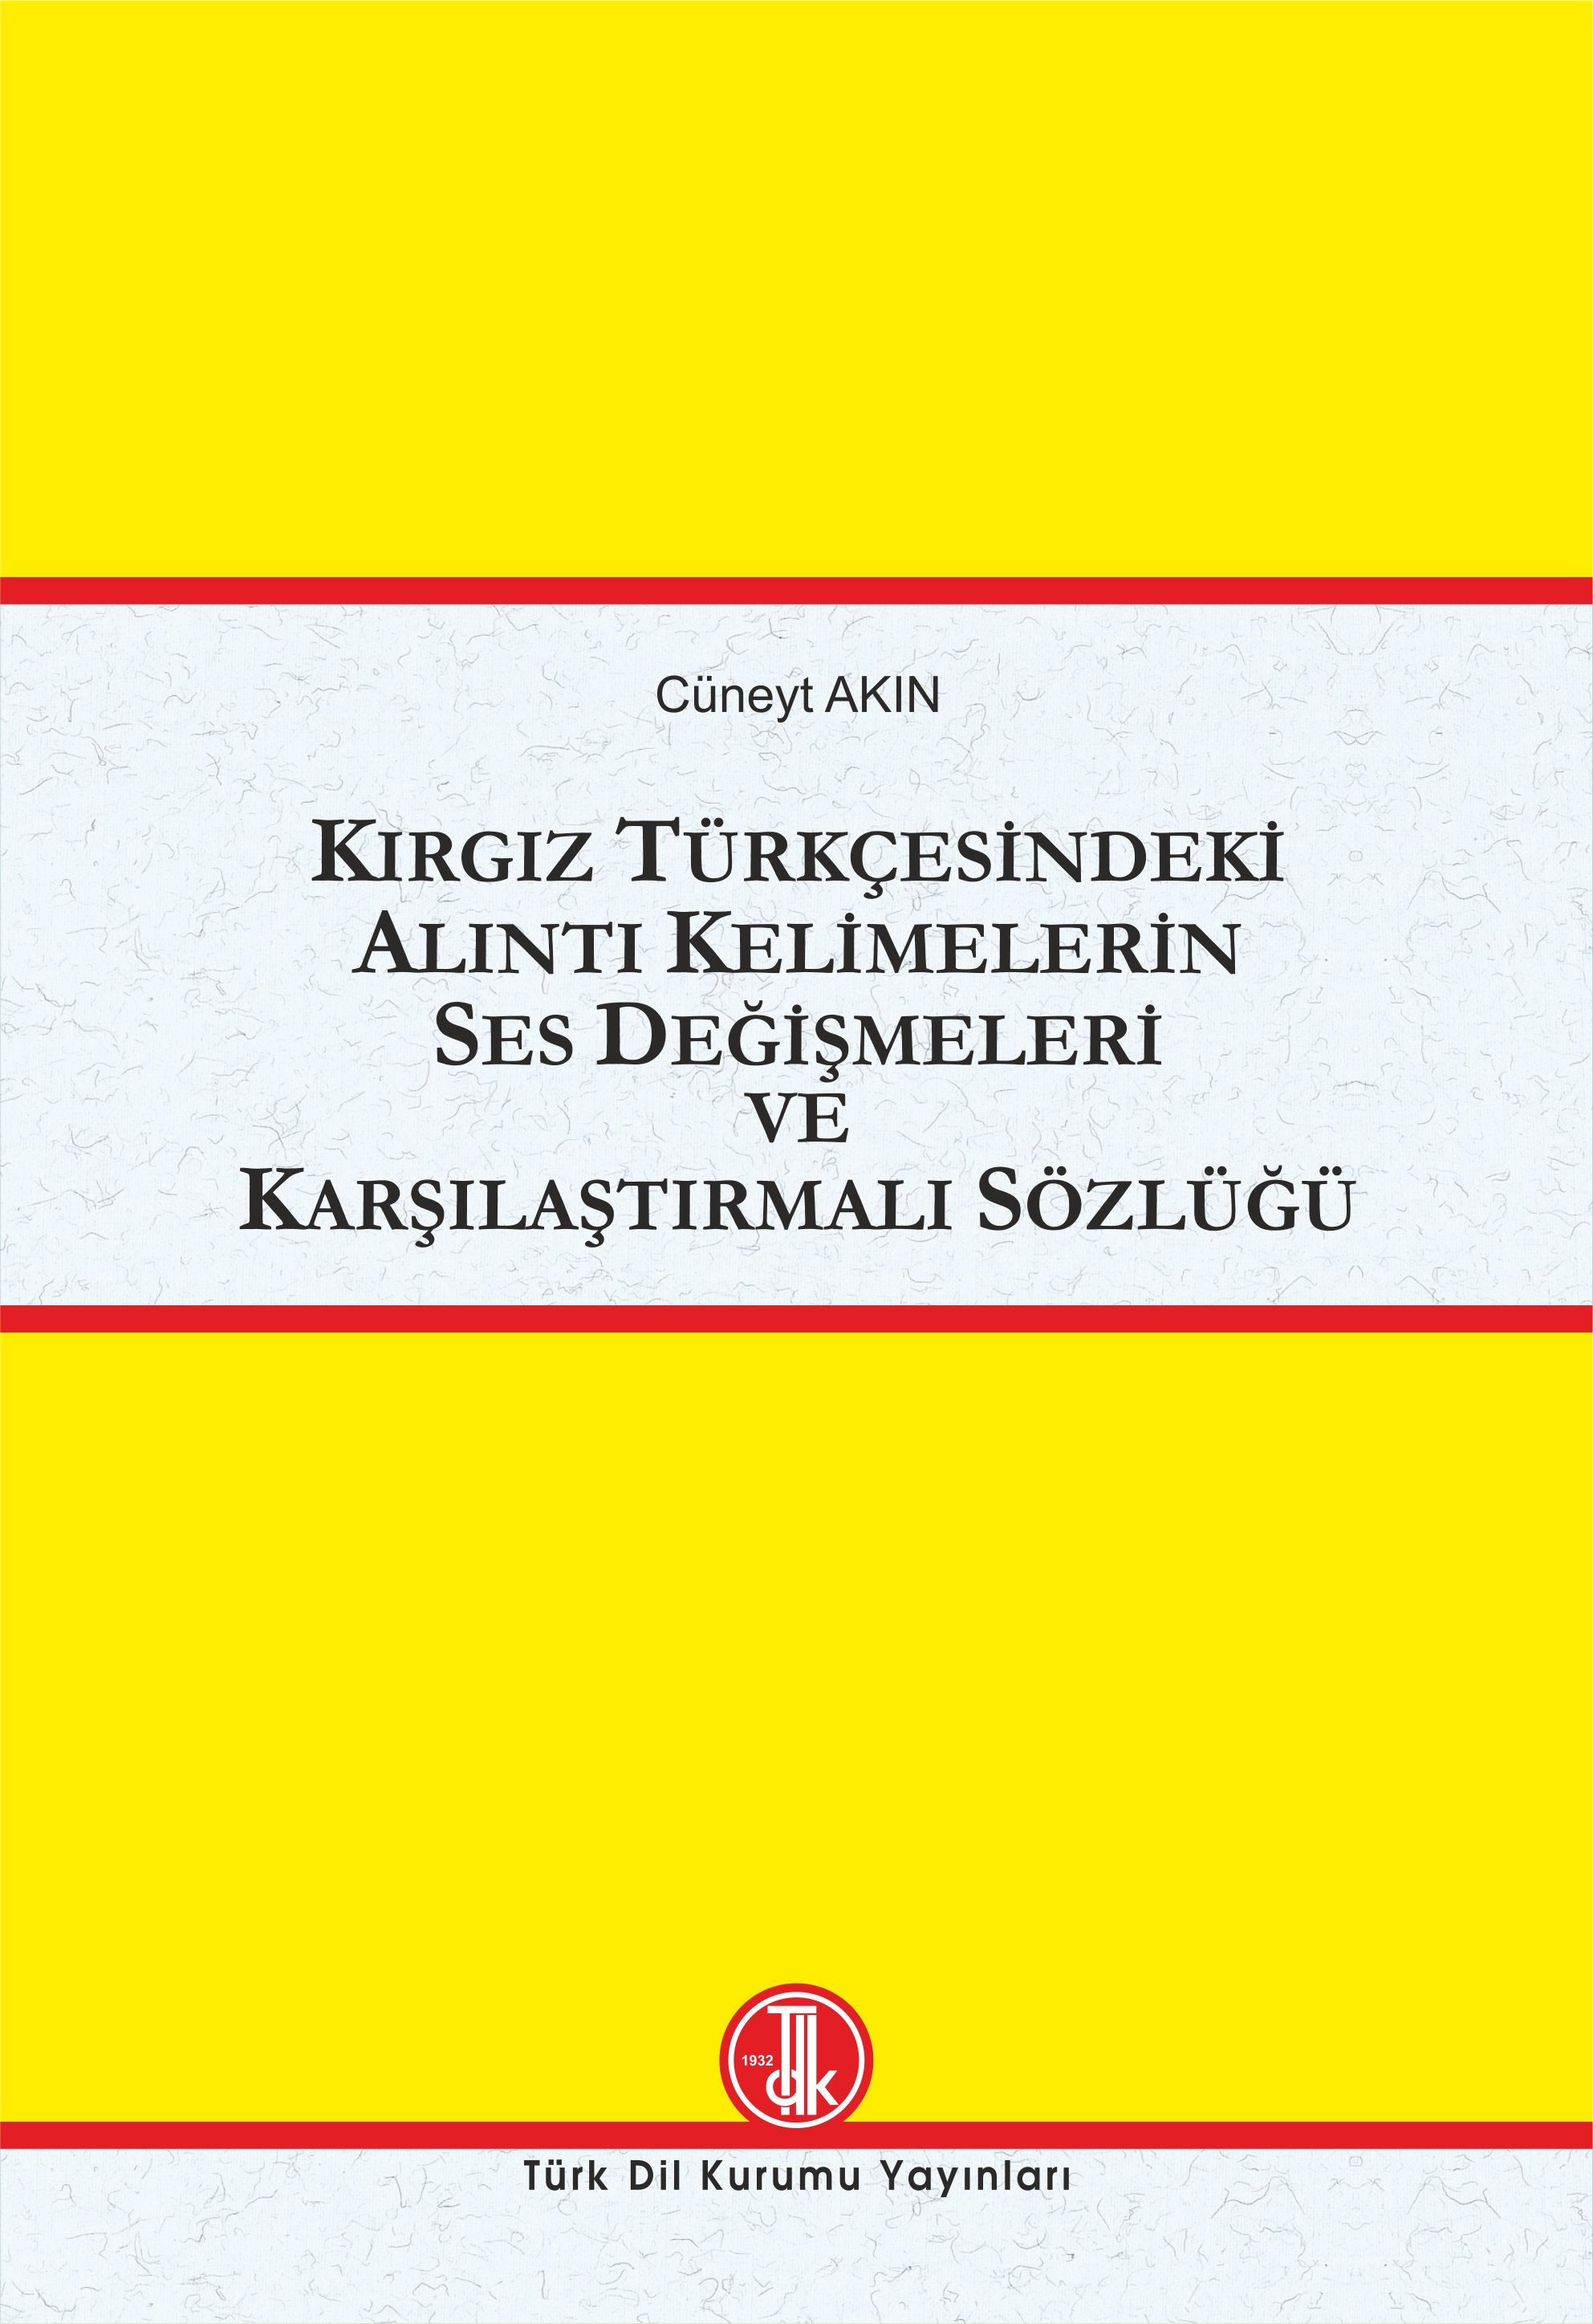 Kırgız Türkçesindeki Alıntı Kelimelerin Ses Değişmeleri ve Karşılaştırmalı Sözlüğü, 2022